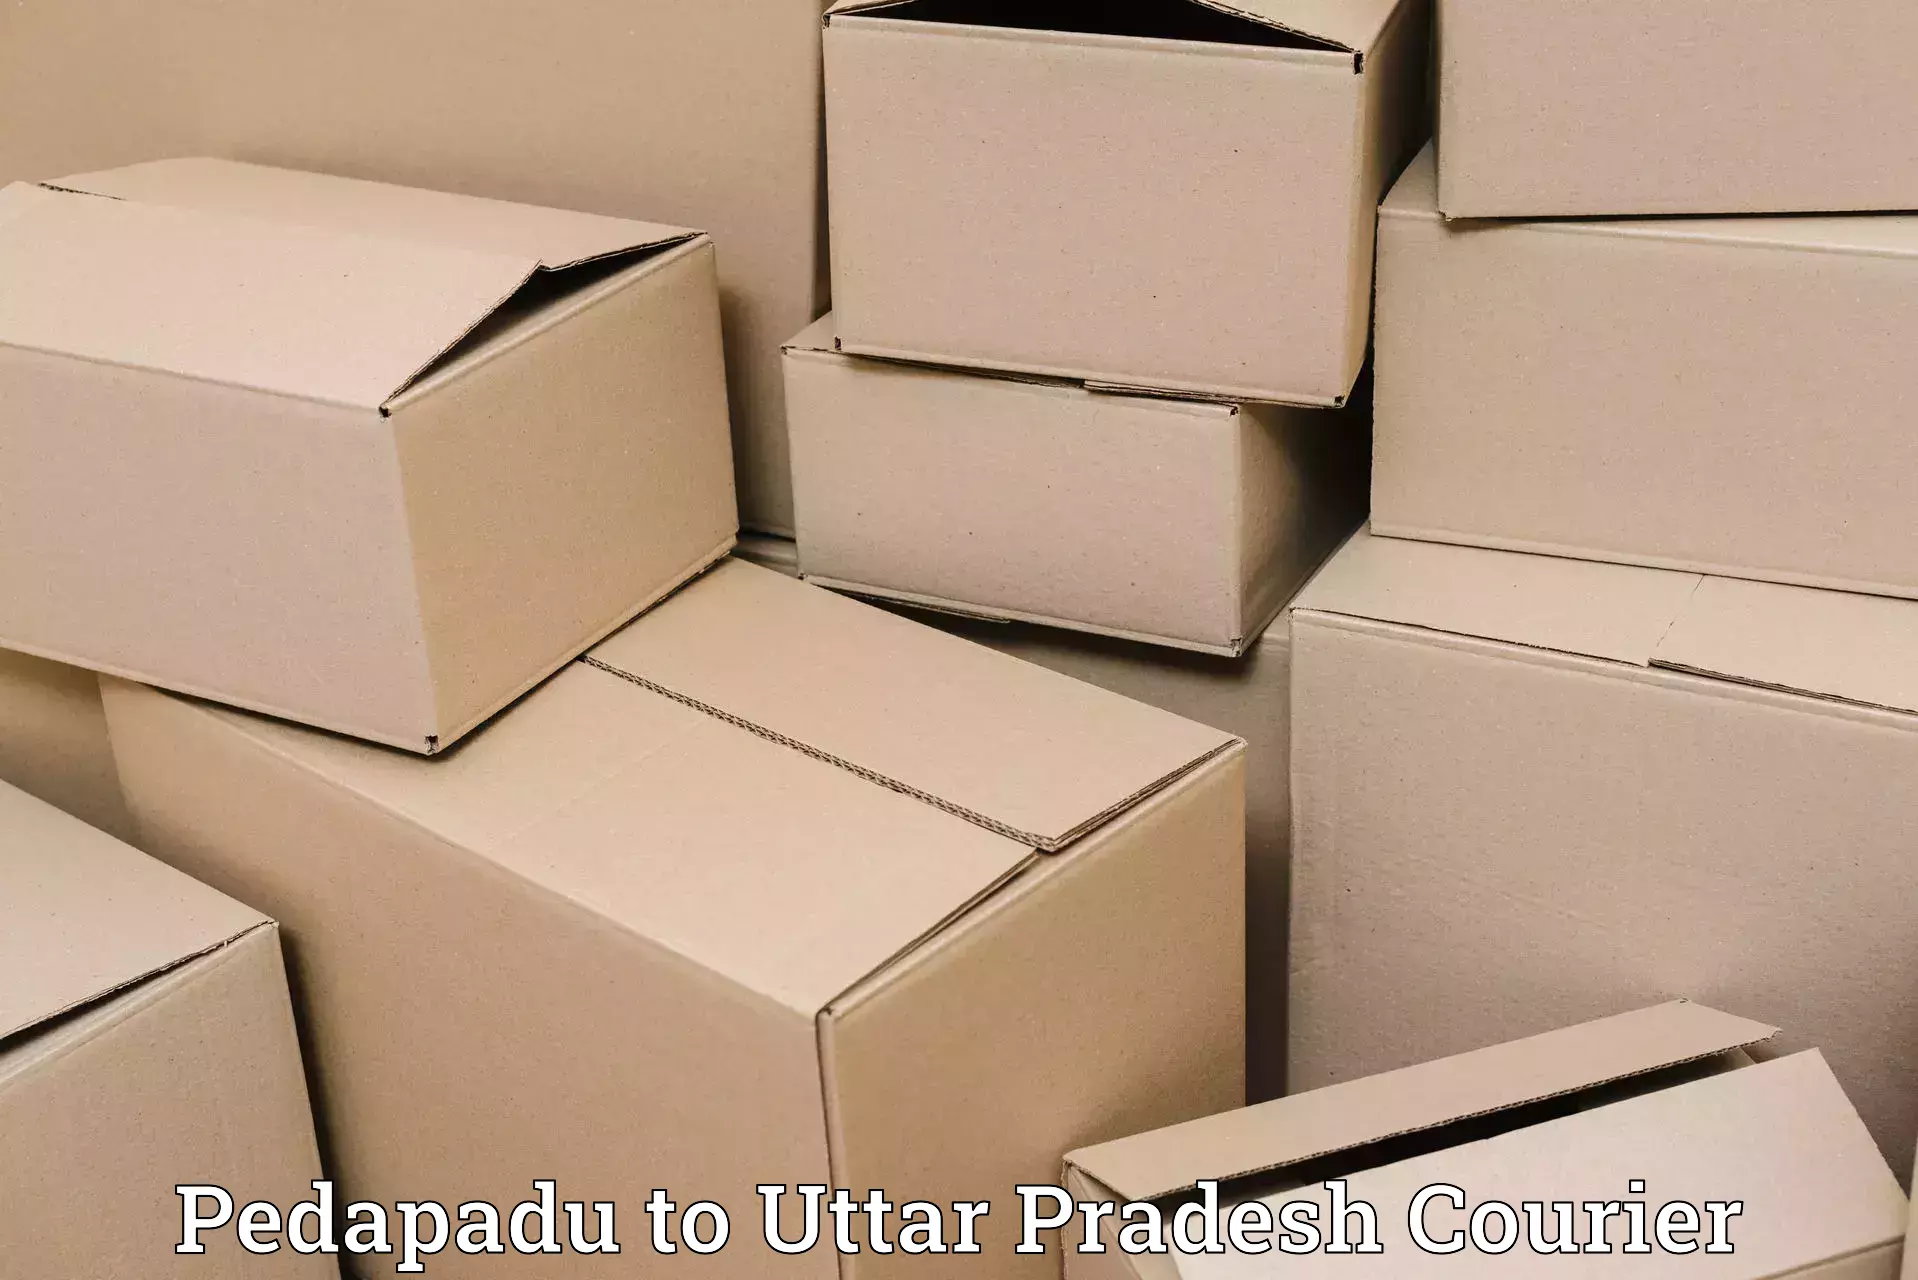 Lightweight parcel options Pedapadu to IIT Kanpur